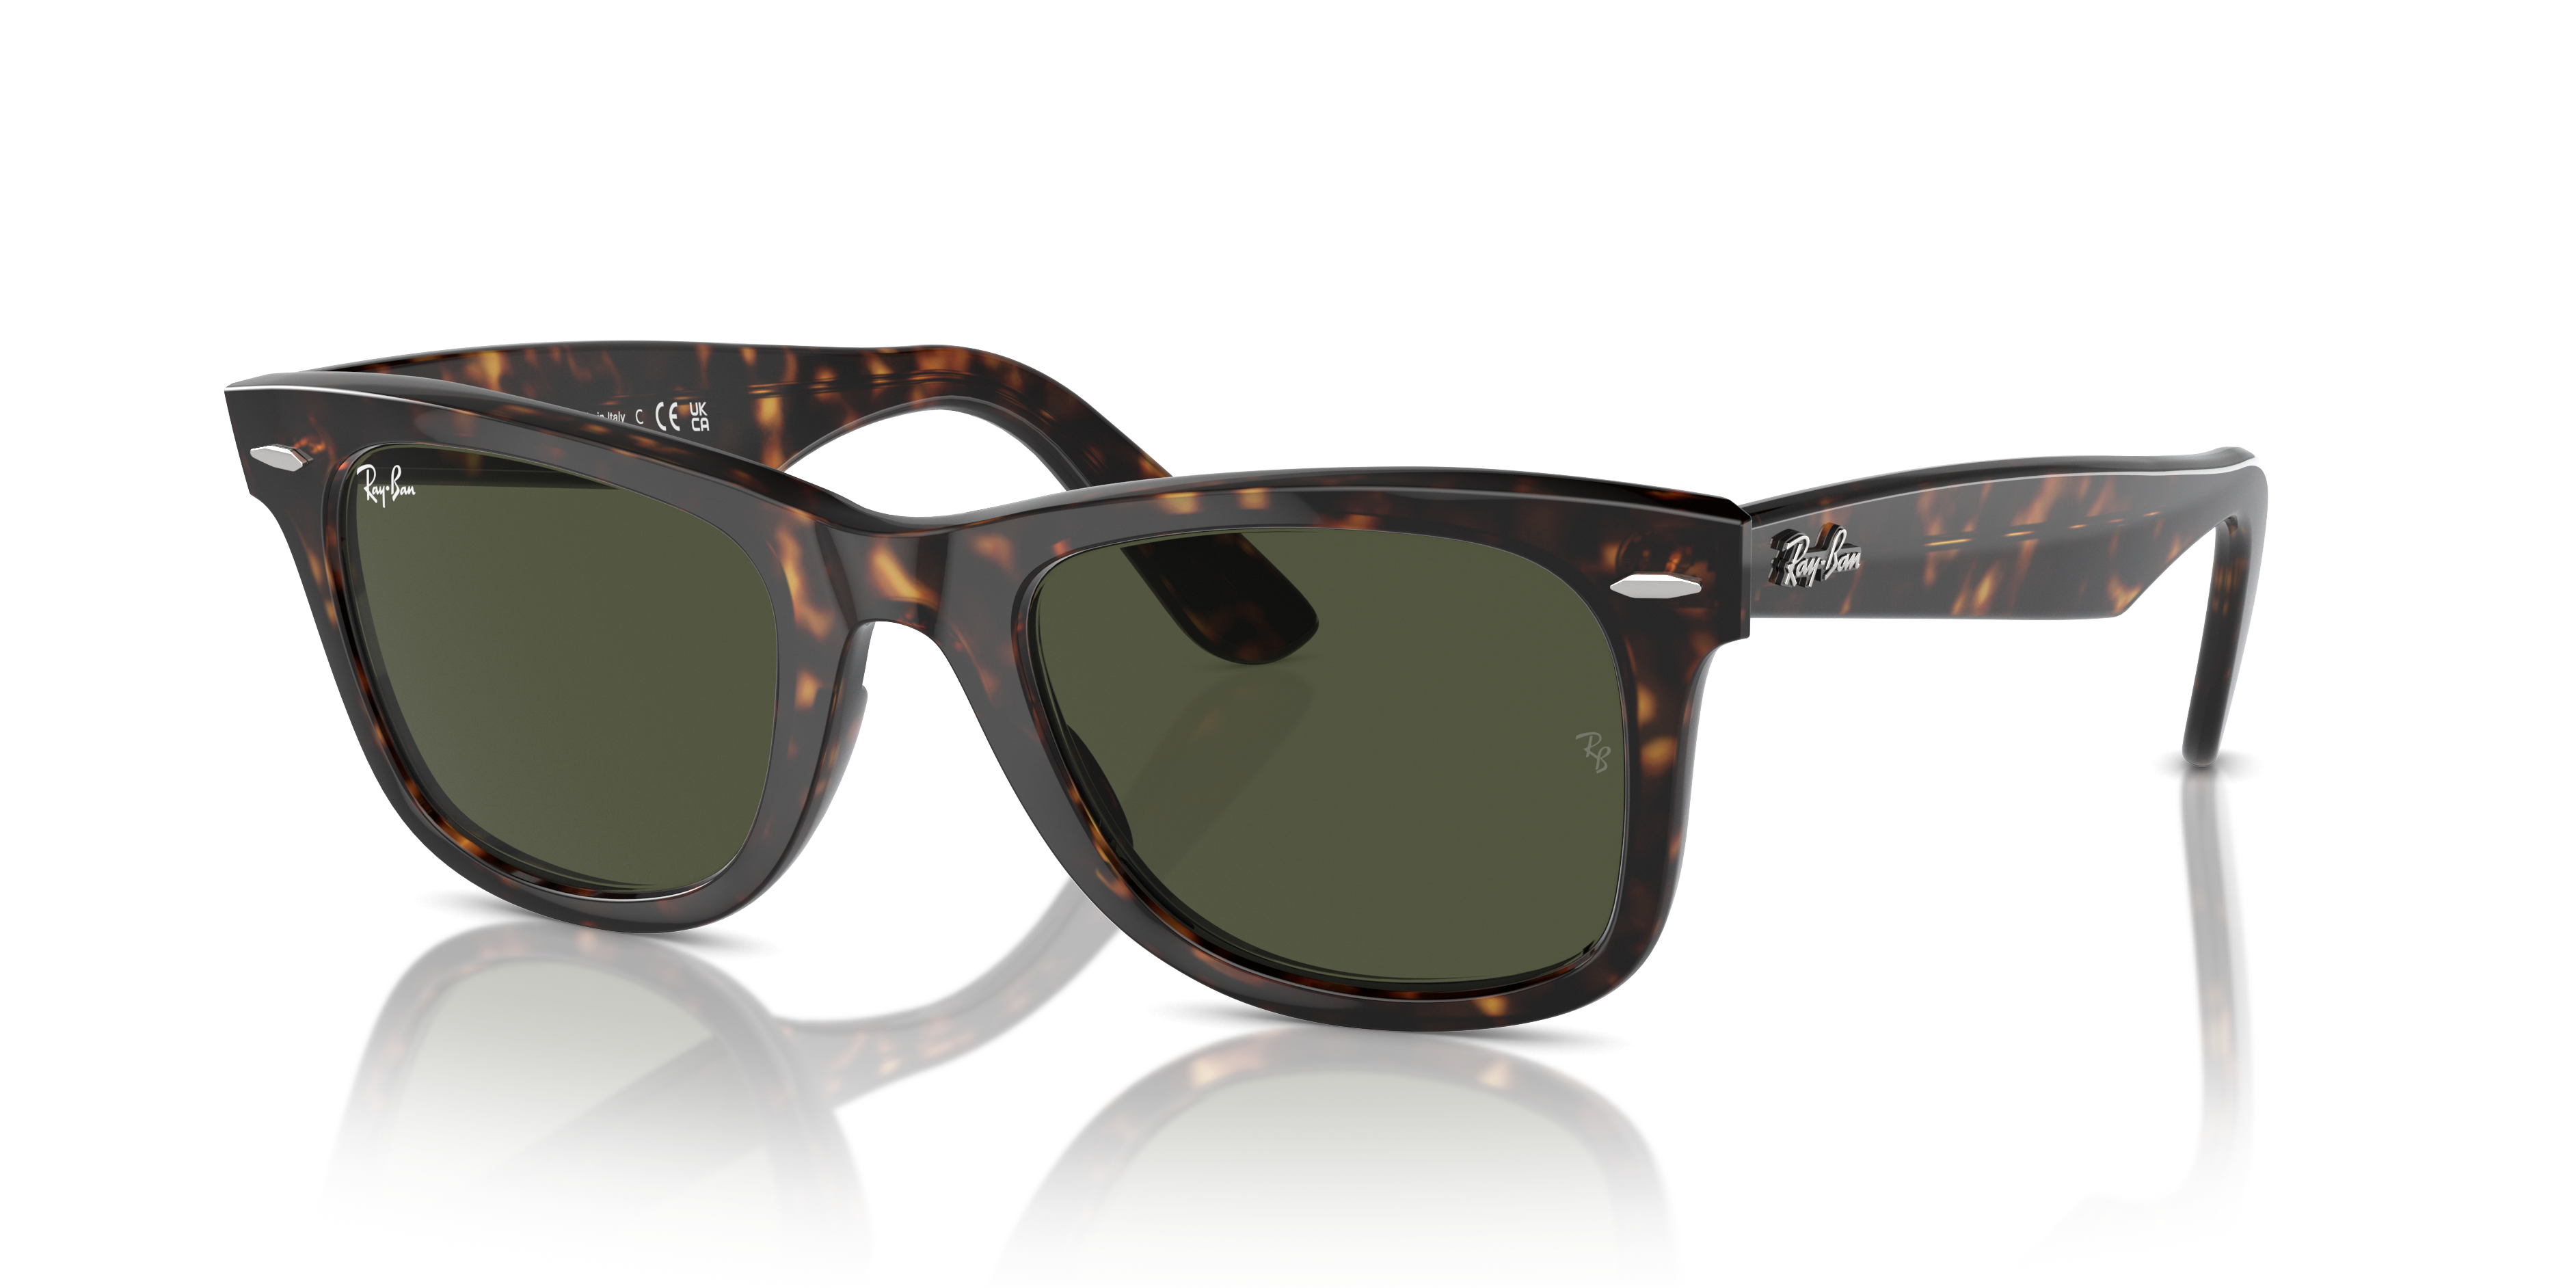 tortoise shell wayfarer sunglasses